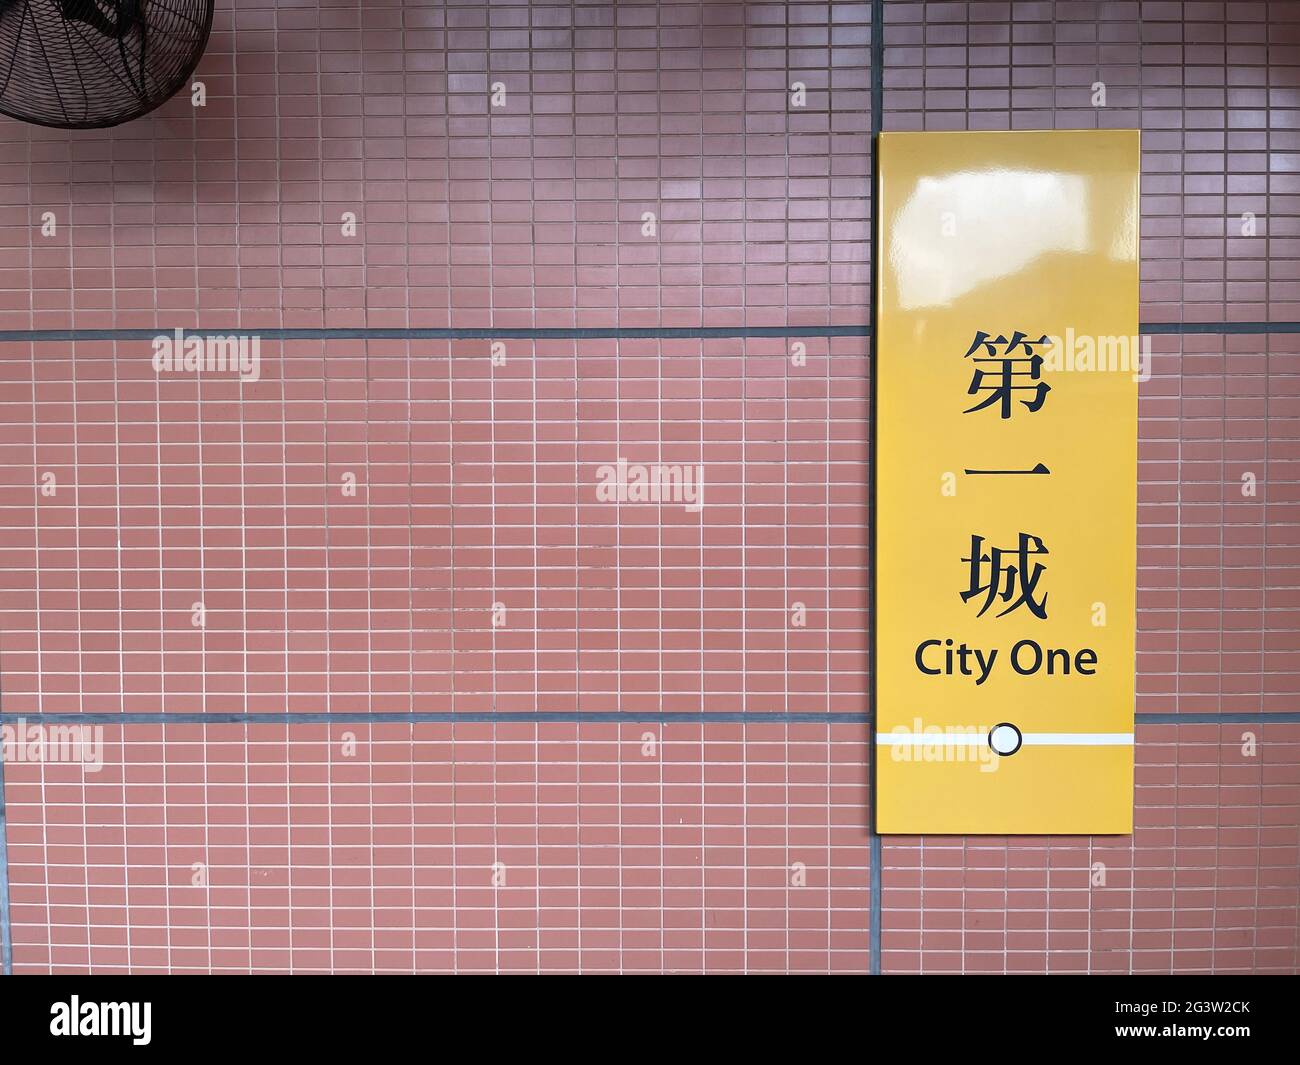 City One Station, Hongkong - 13. Juni 2021: City One MTR-Bahnhofsplattform in Hongkong, Übersetzung lautet: „City One“ Stockfoto